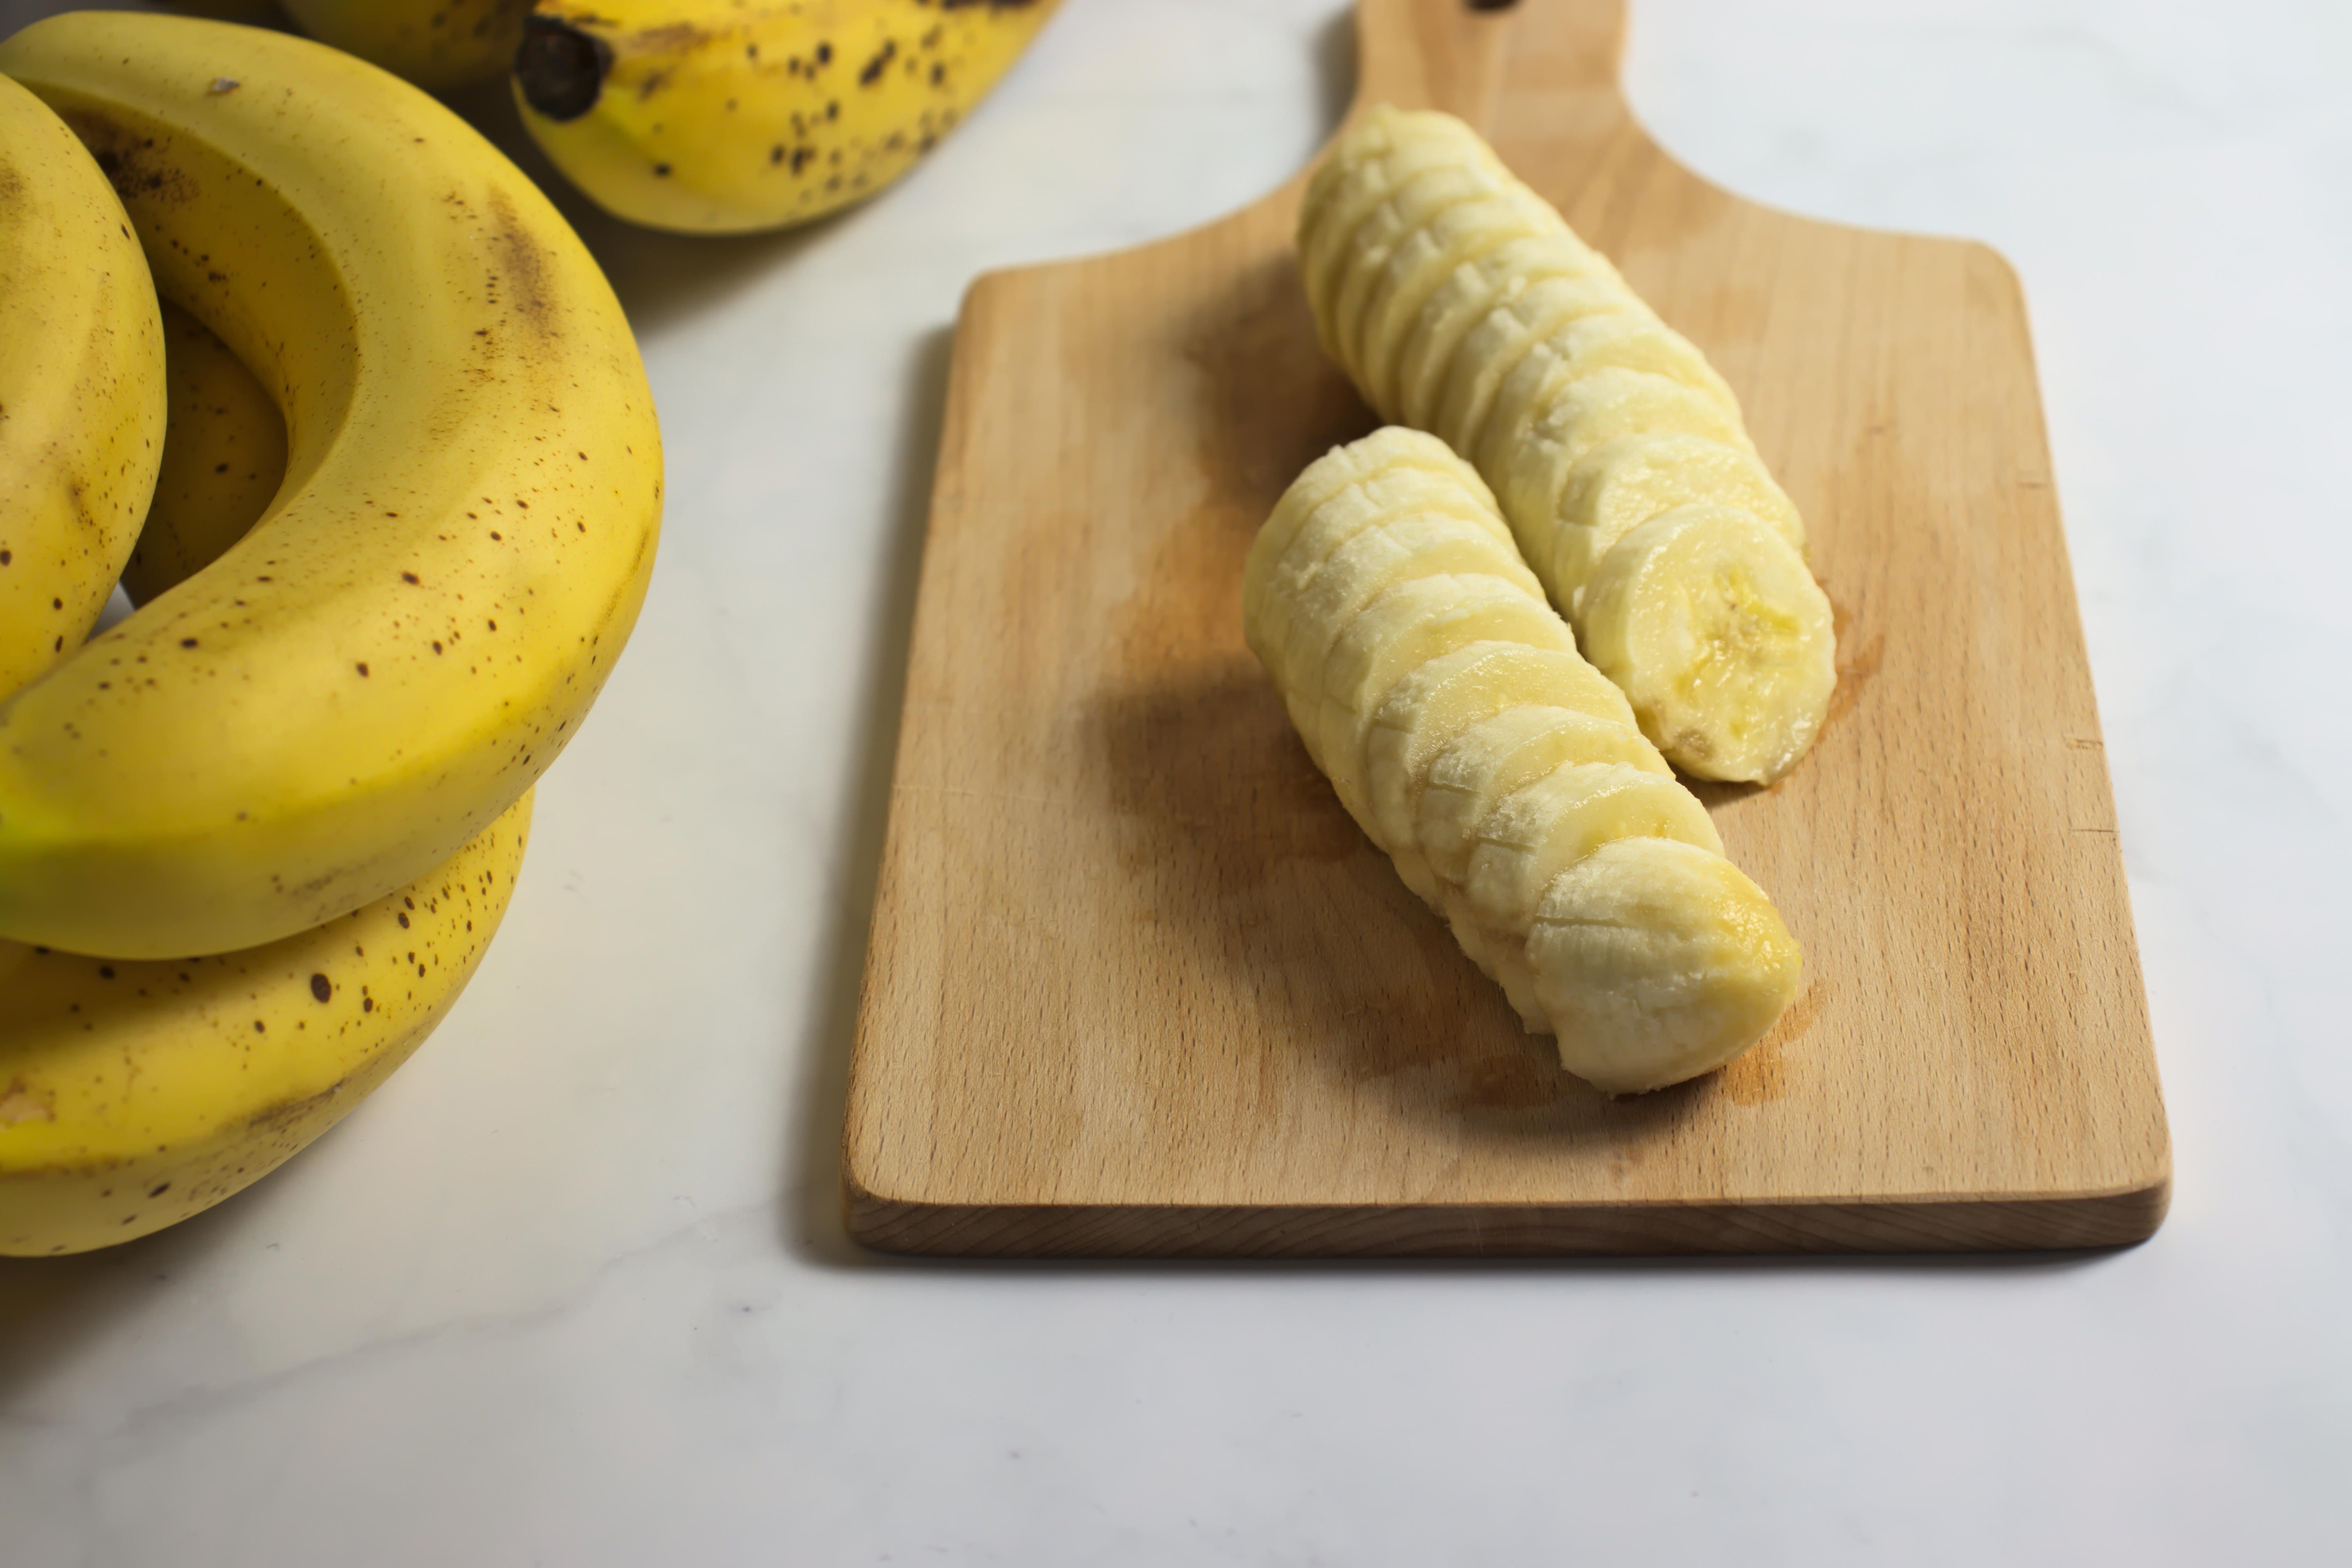 Freshly sliced ripe bananas